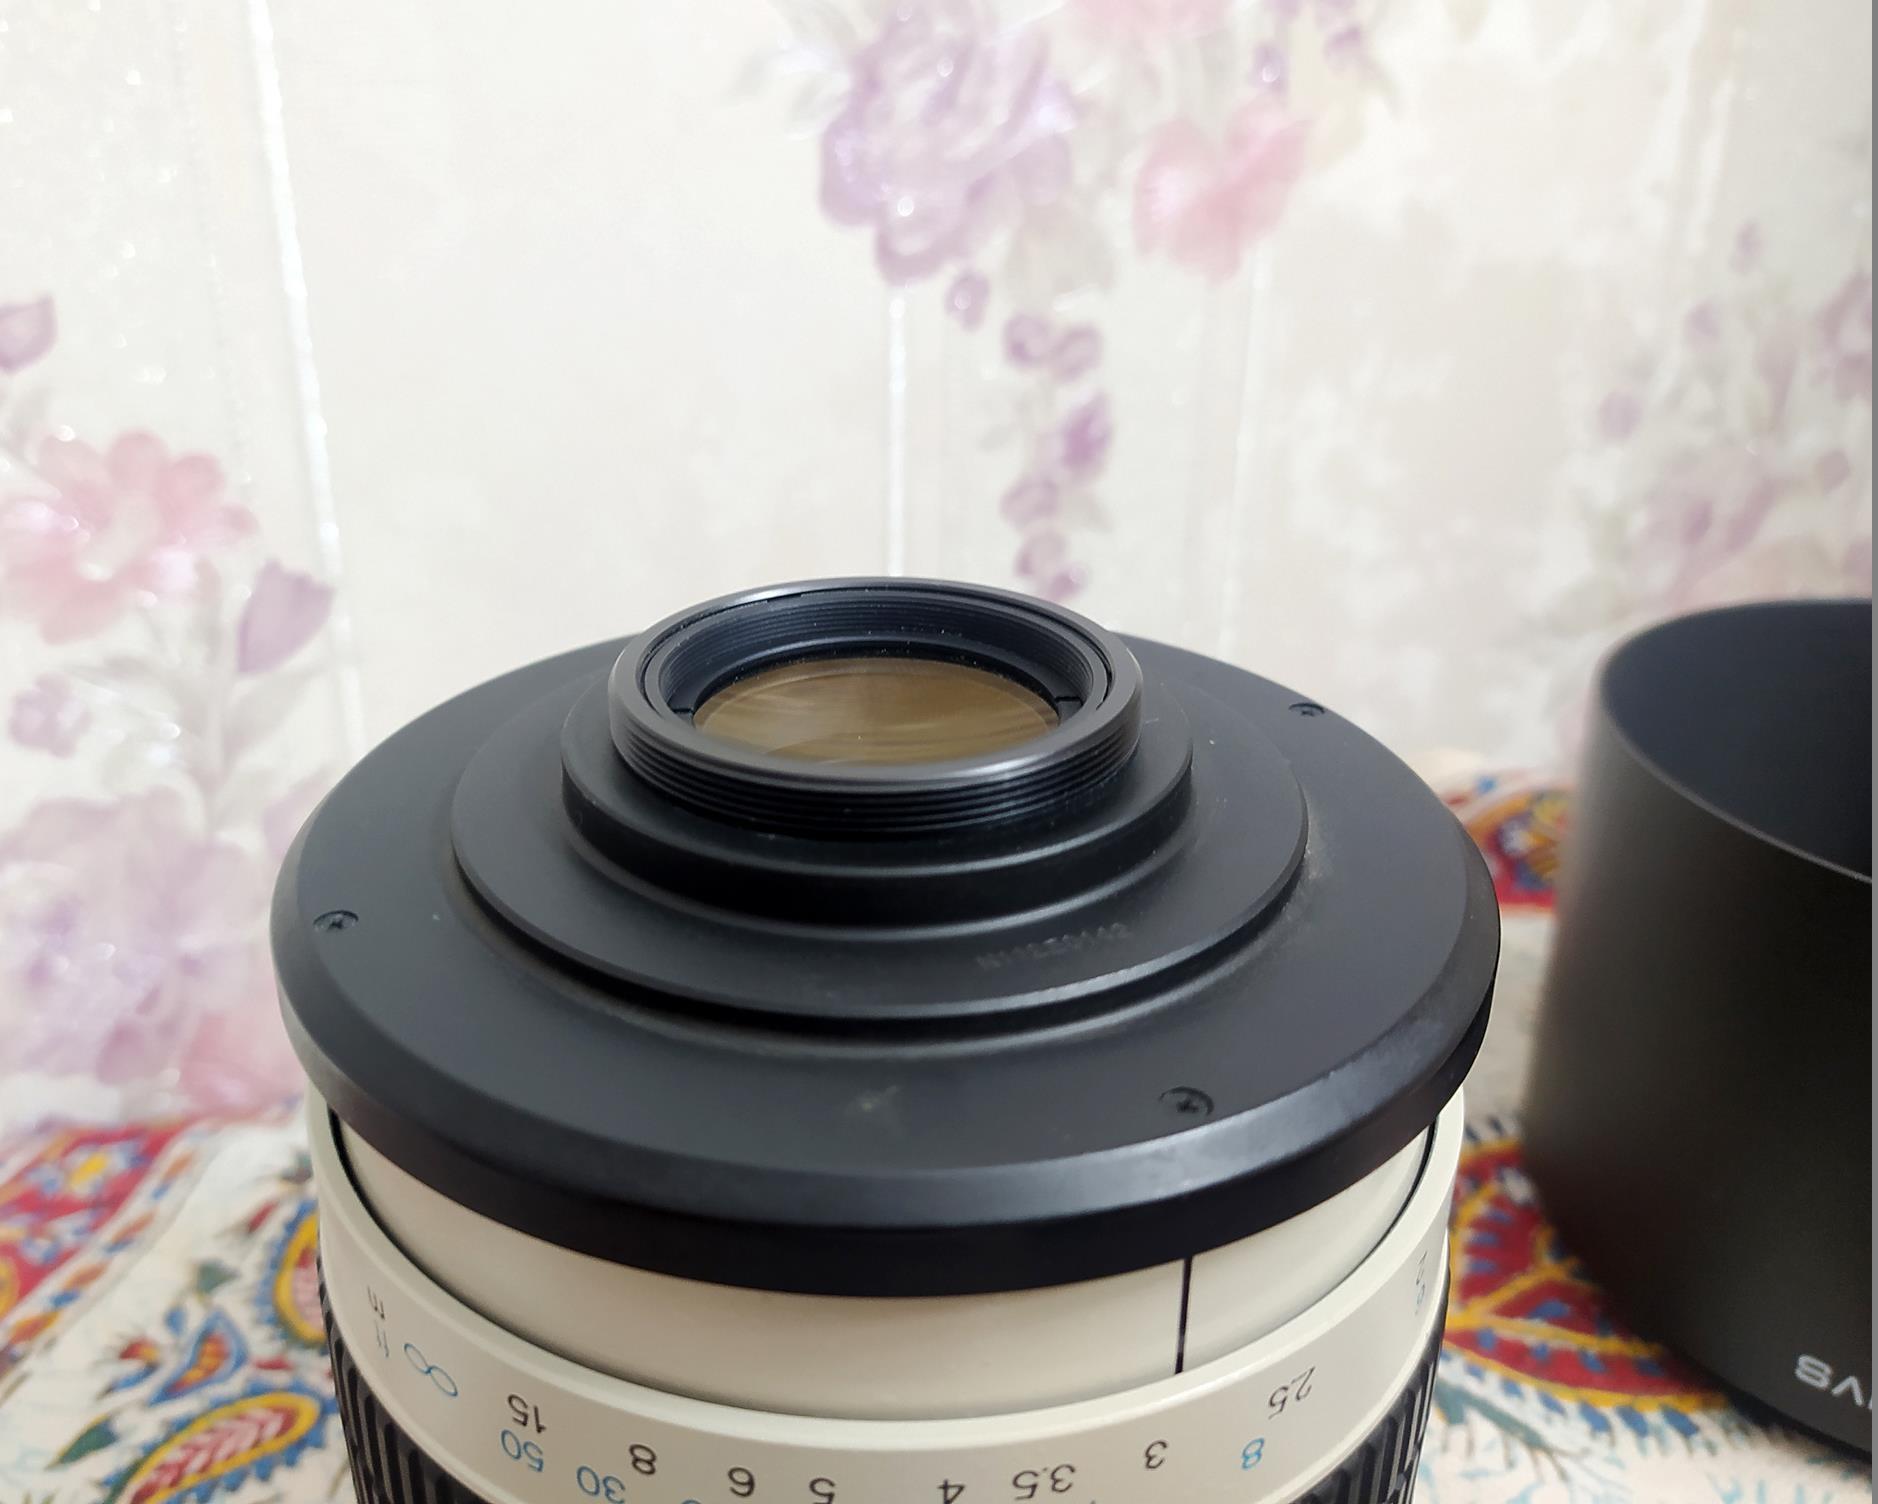 لنز تله آینه ای Samyang Tele 500mm